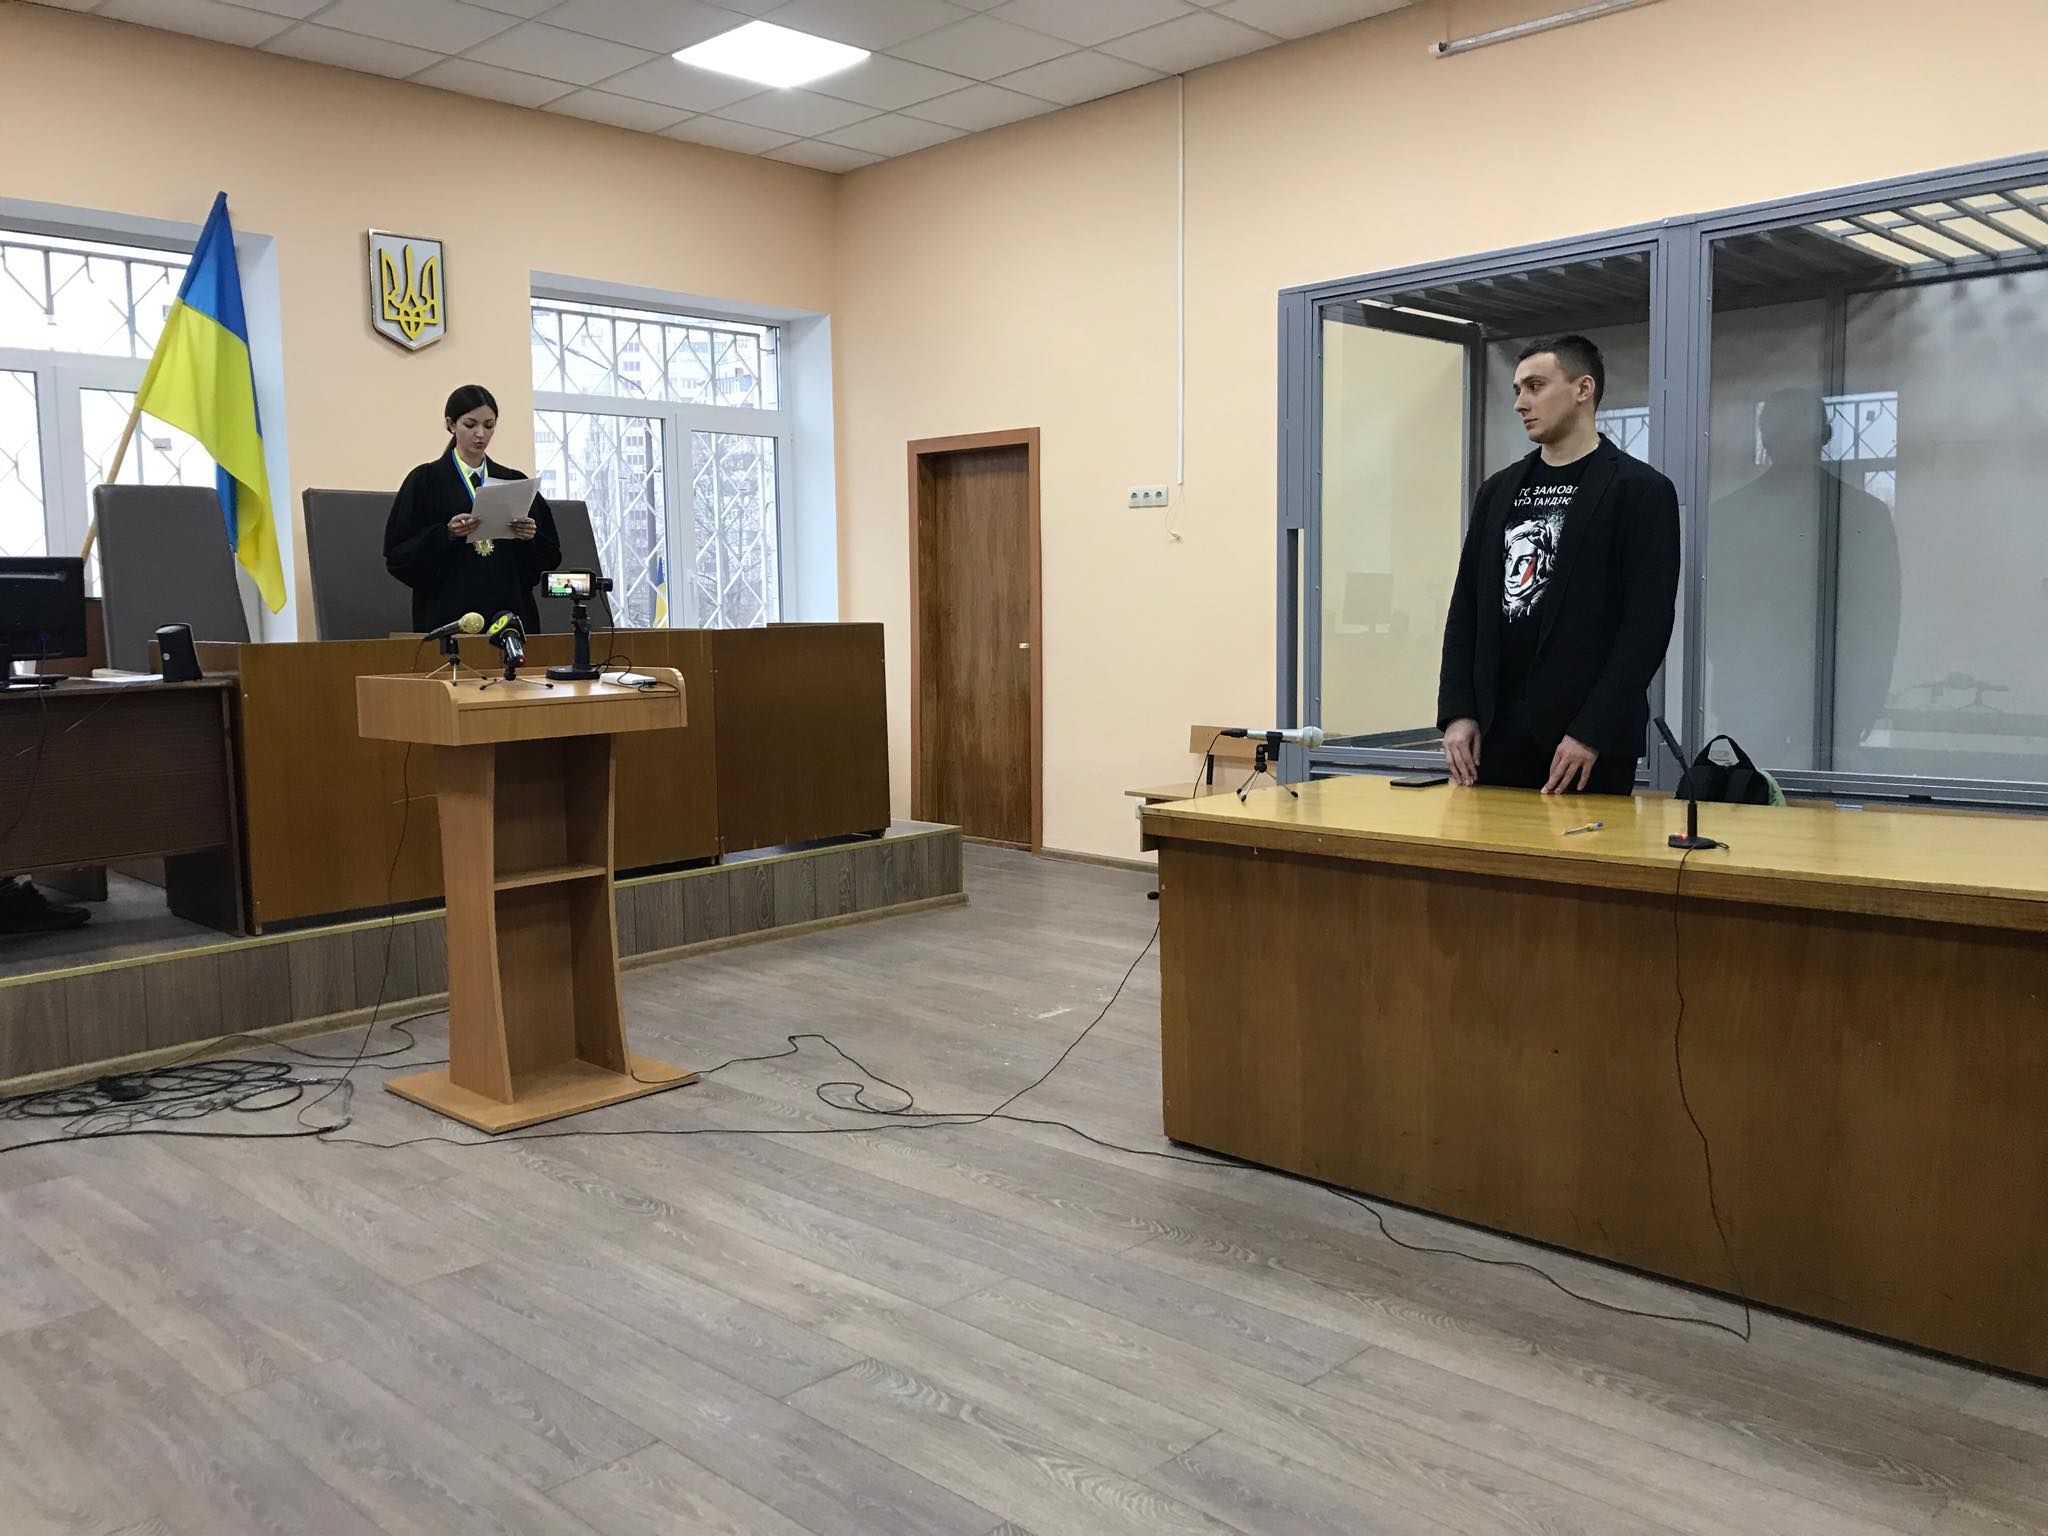 Акція "Хто замовив Гандзюк" біля форуму Порошенка: яке рішення щодо активістів виніс суд